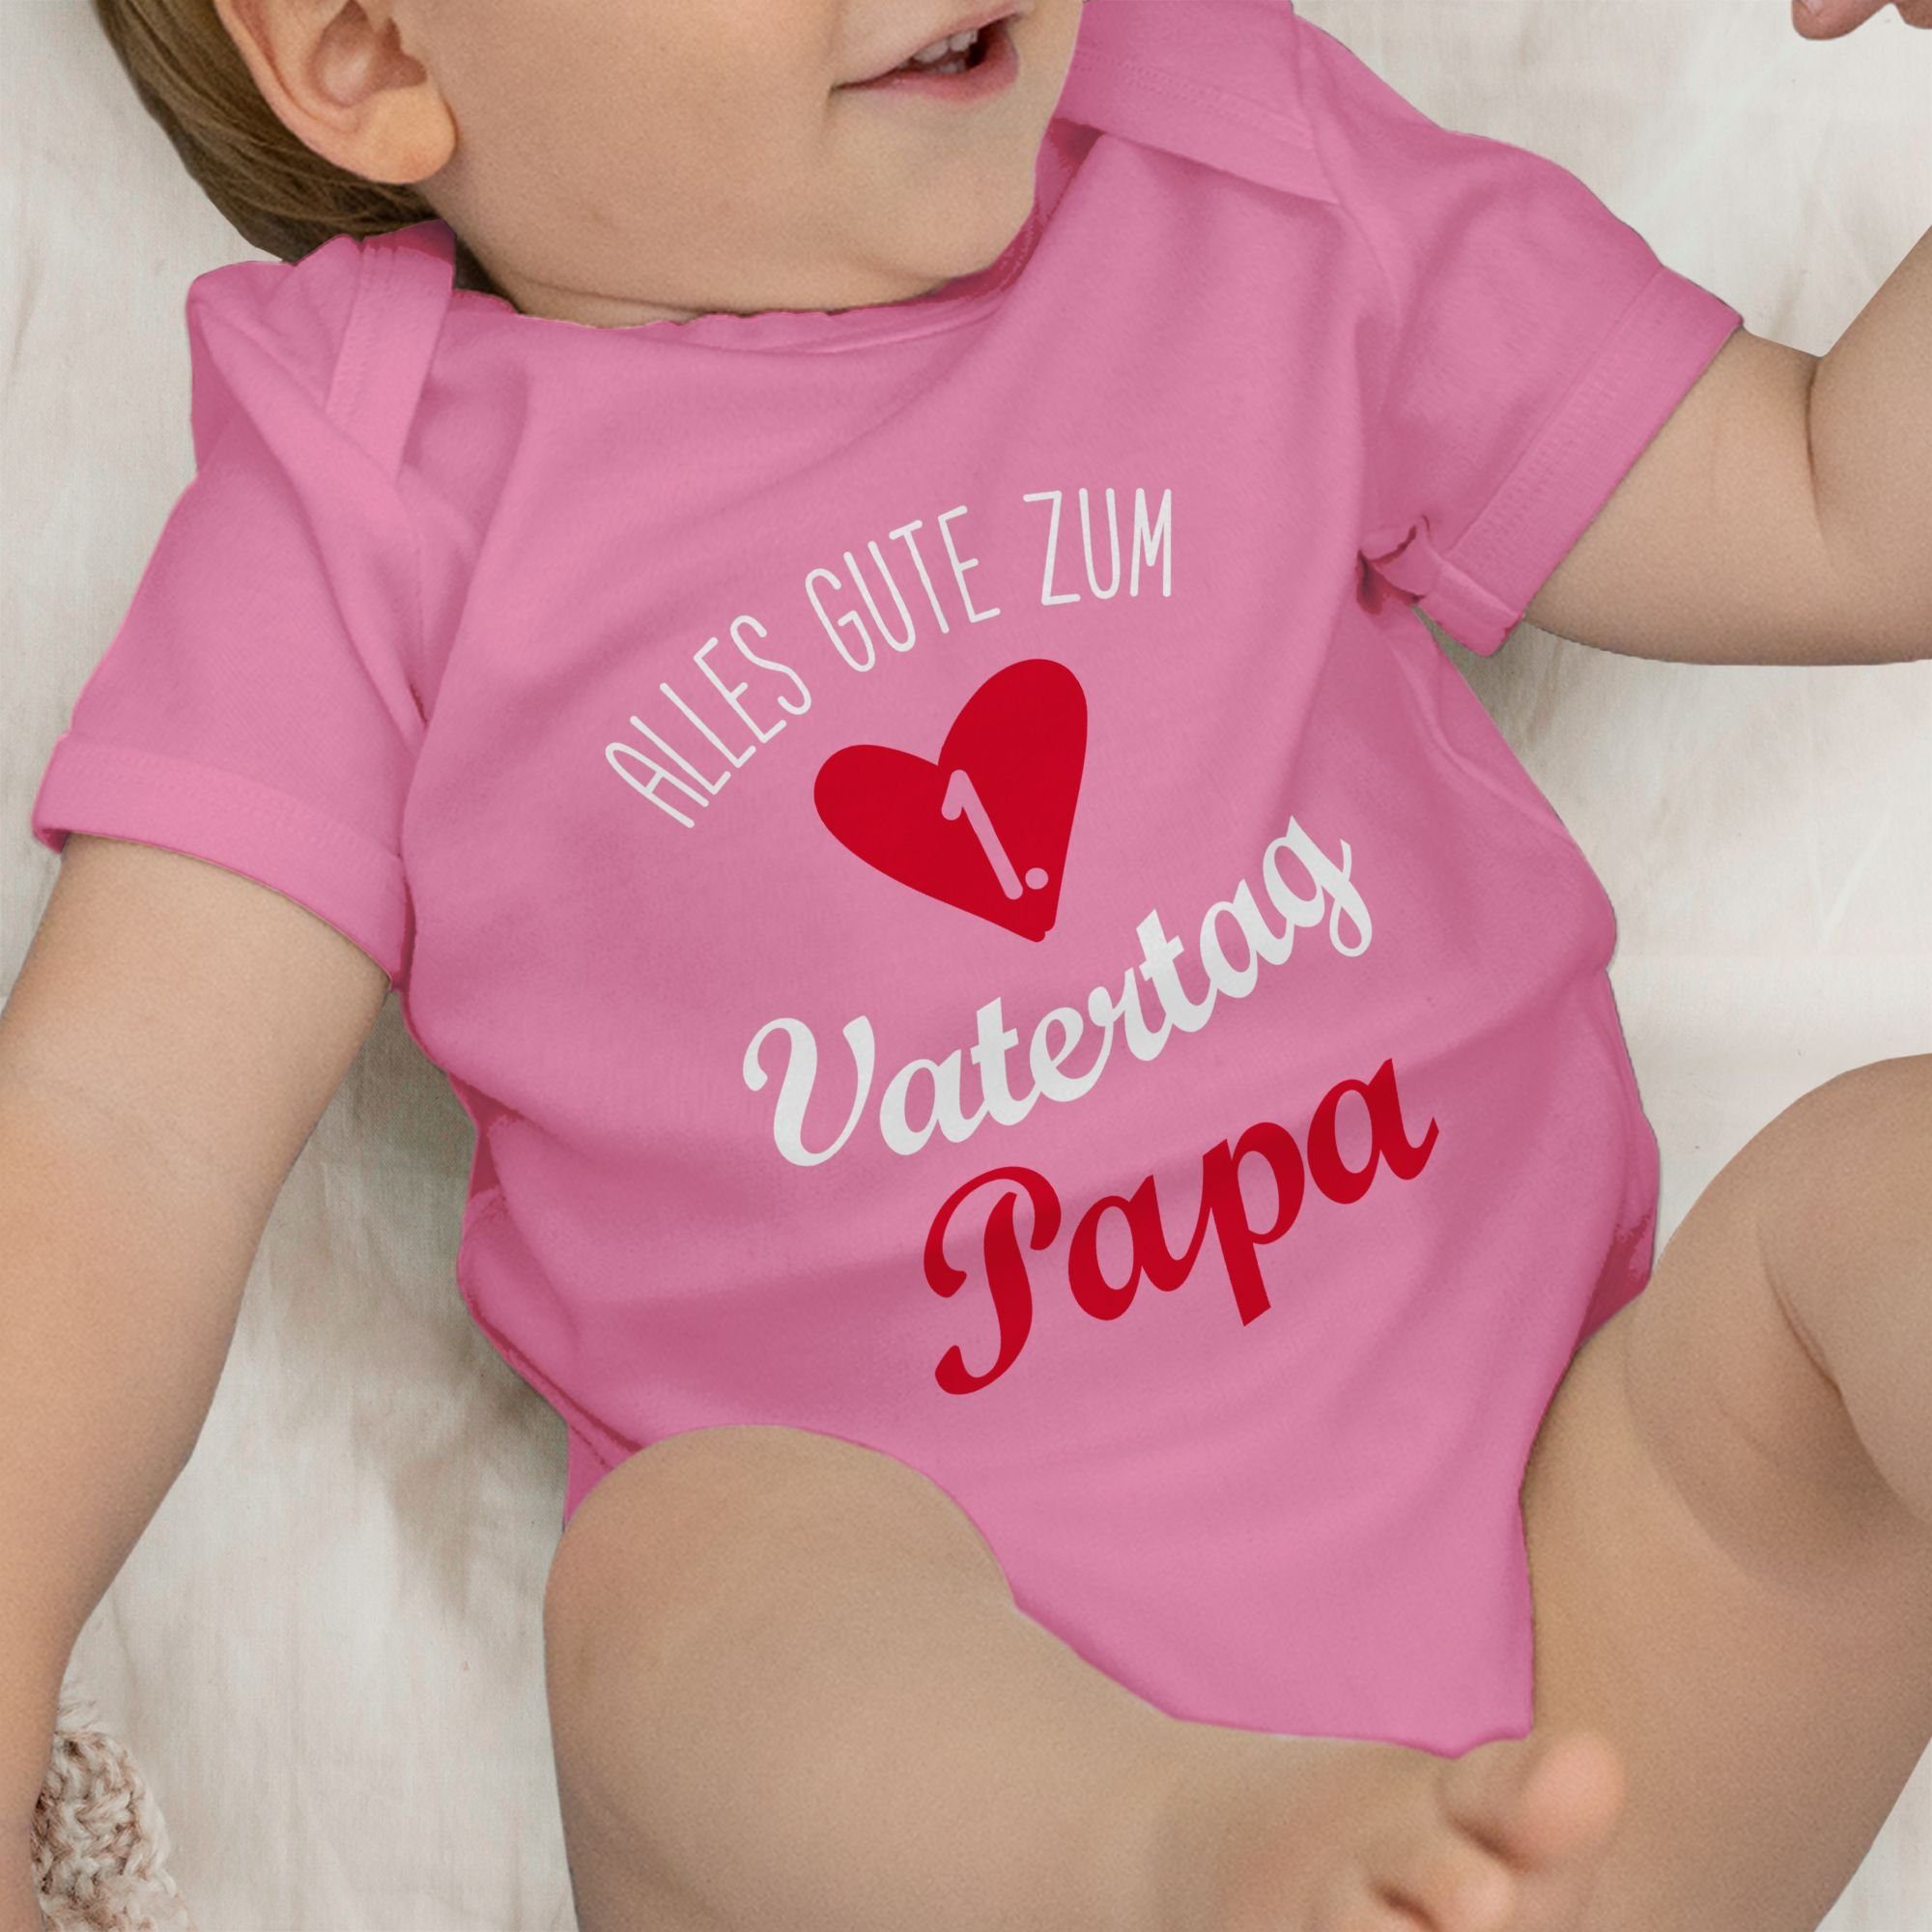 Shirtracer Shirtbody Alles 3 weiß gute Baby Pink Geschenk Vatertag zum ersten Vatertag